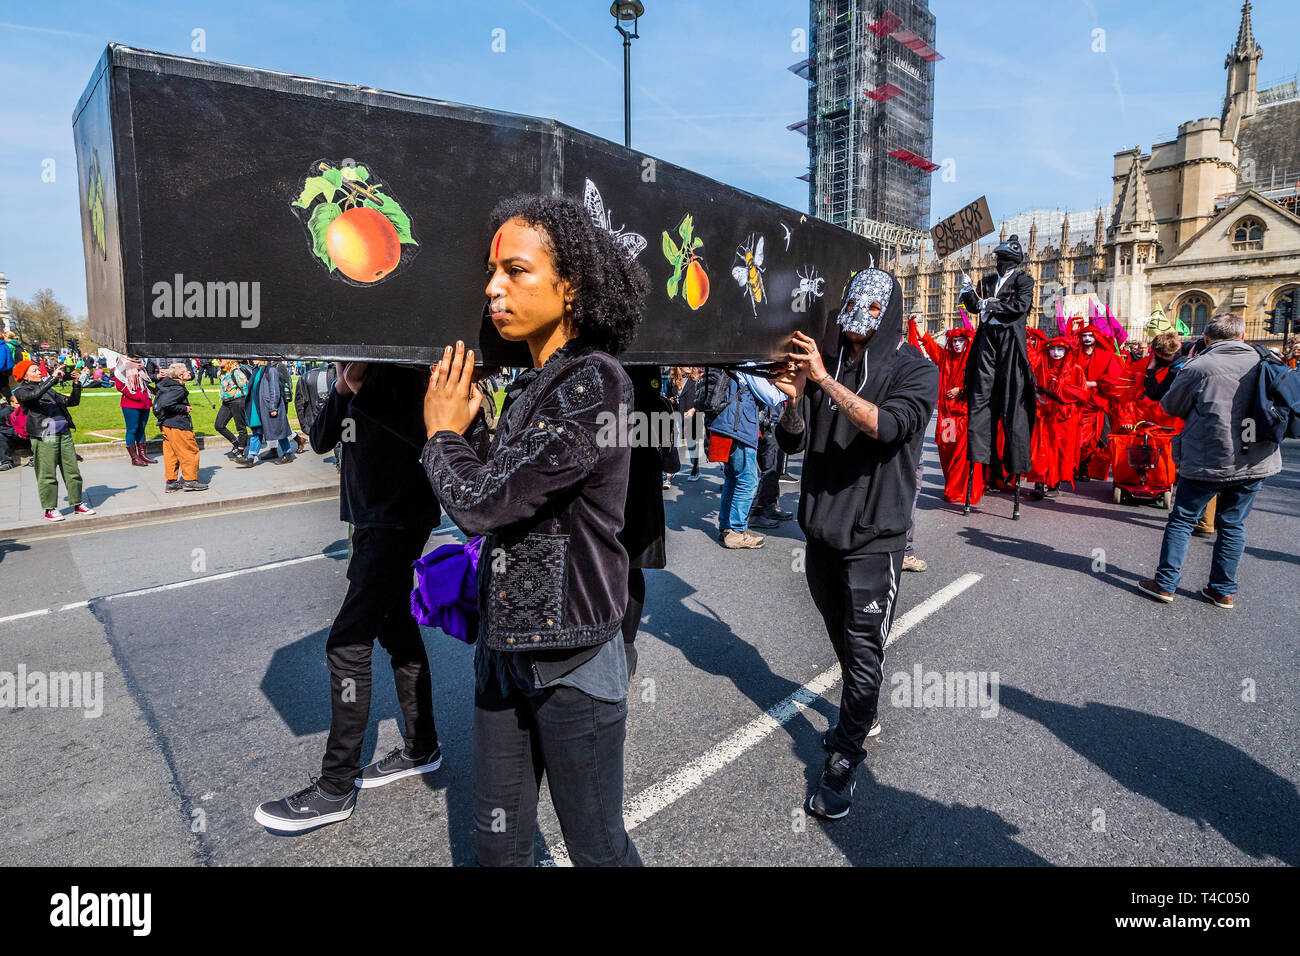 Londres, Royaume-Uni. 15 avril, 2019. Une marche funèbre, à la place du Parlement, pour tous les morts, les gens, les animaux et les insectes à cause du changement climatique, l'extinction des manifestants de plusieurs blocs de la rébellion (Hyde Park, Oxford Cuircus, Piccadilly Circus, le pont de Waterloo et de la place du Parlement) à Londres dans le cadre de leur action de protestation à la demande par le gouvernement britannique sur le "climat" à. L'action fait partie d'une protestation coordonnée. Crédit : Guy Bell/Alamy Live News Banque D'Images